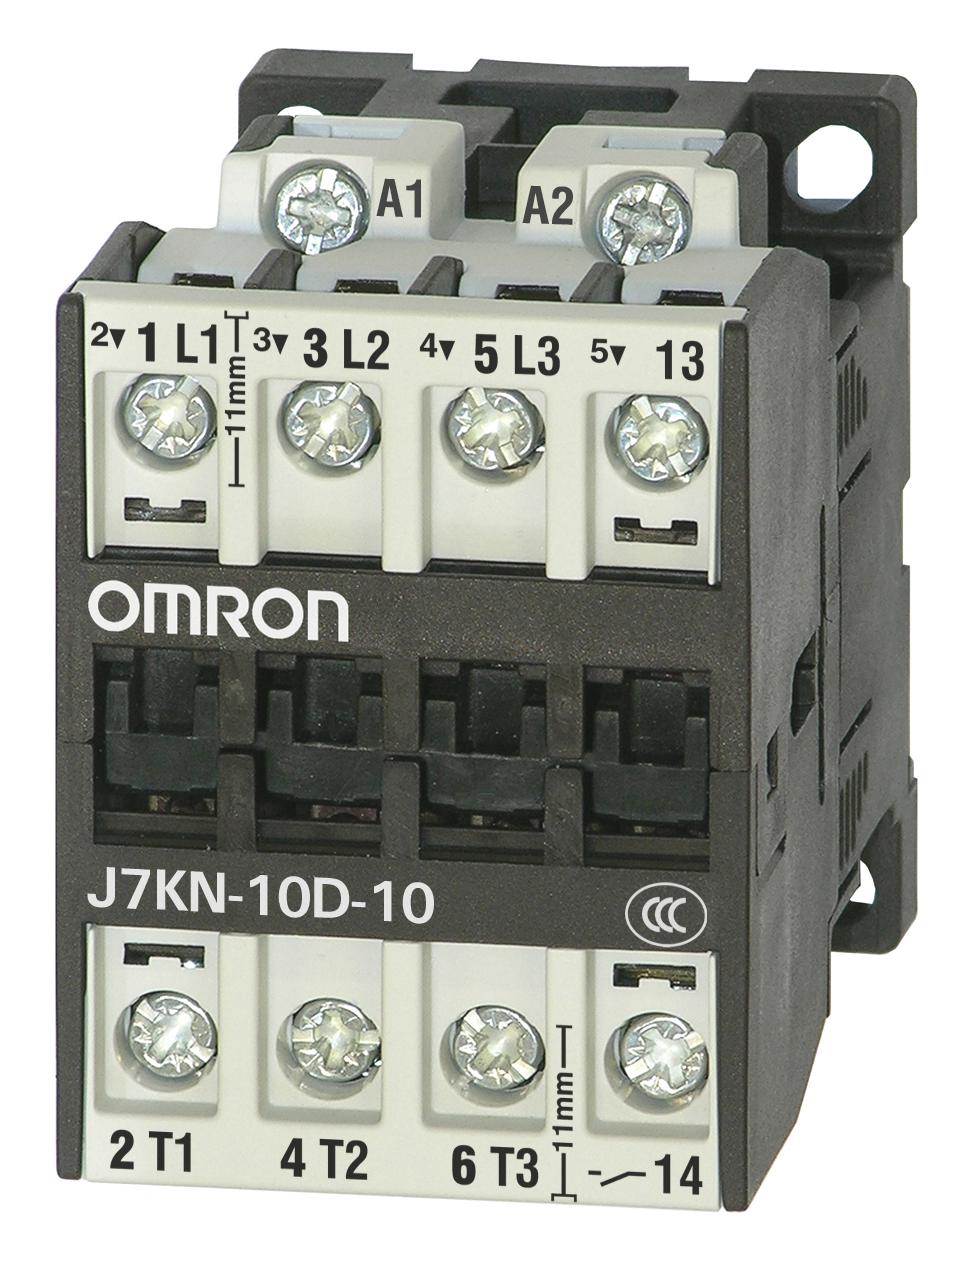 J7KN-10D-10 24D CONTACTORS RELAYS OMRON